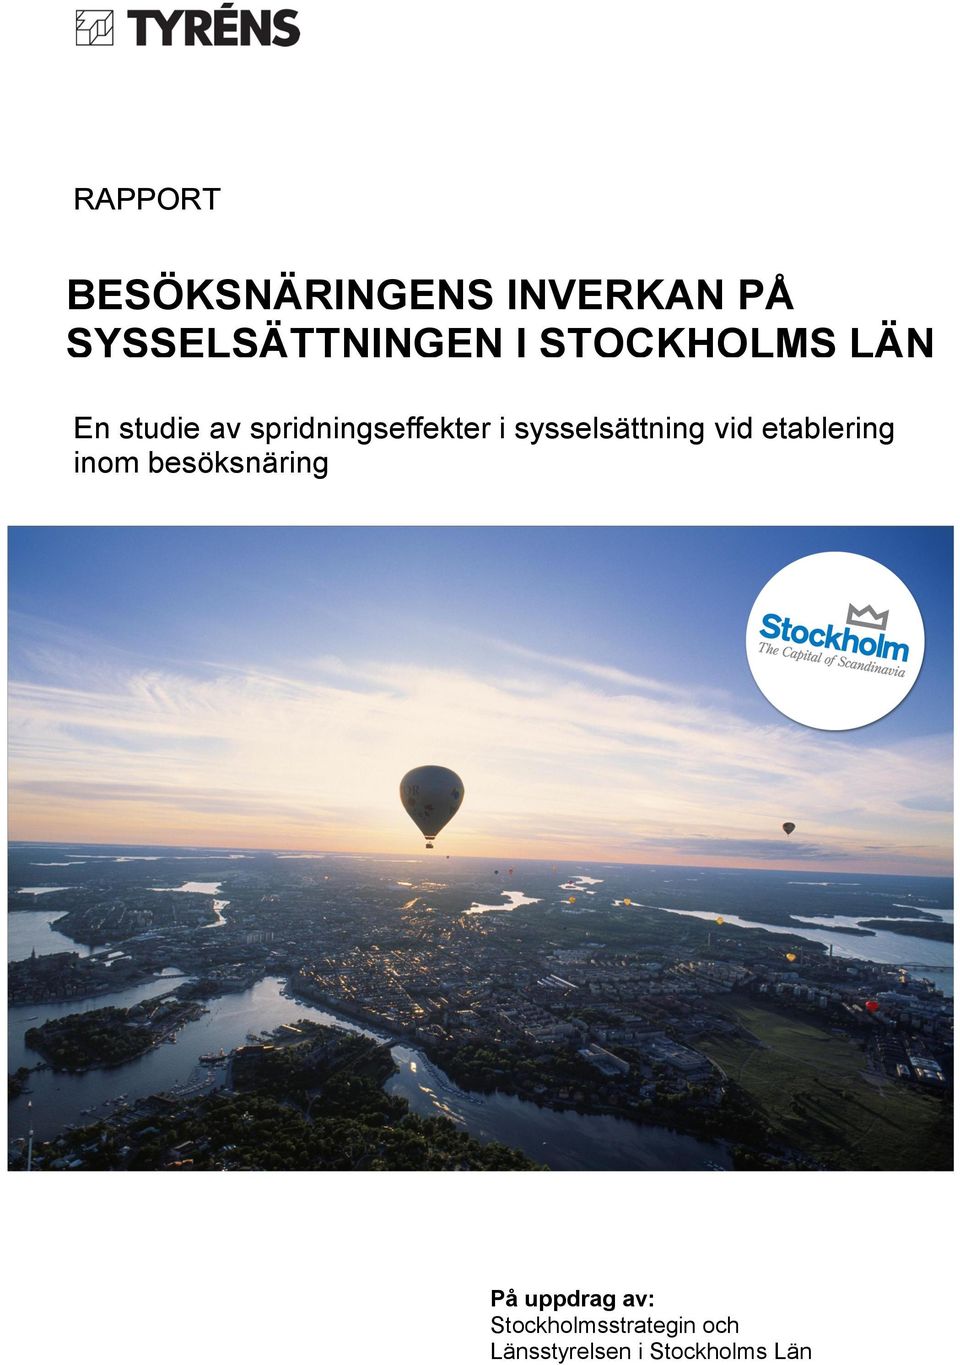 besöksnäring På Stockholmsstrategin Länsstyrelsen i Stockholms Län uppdrag